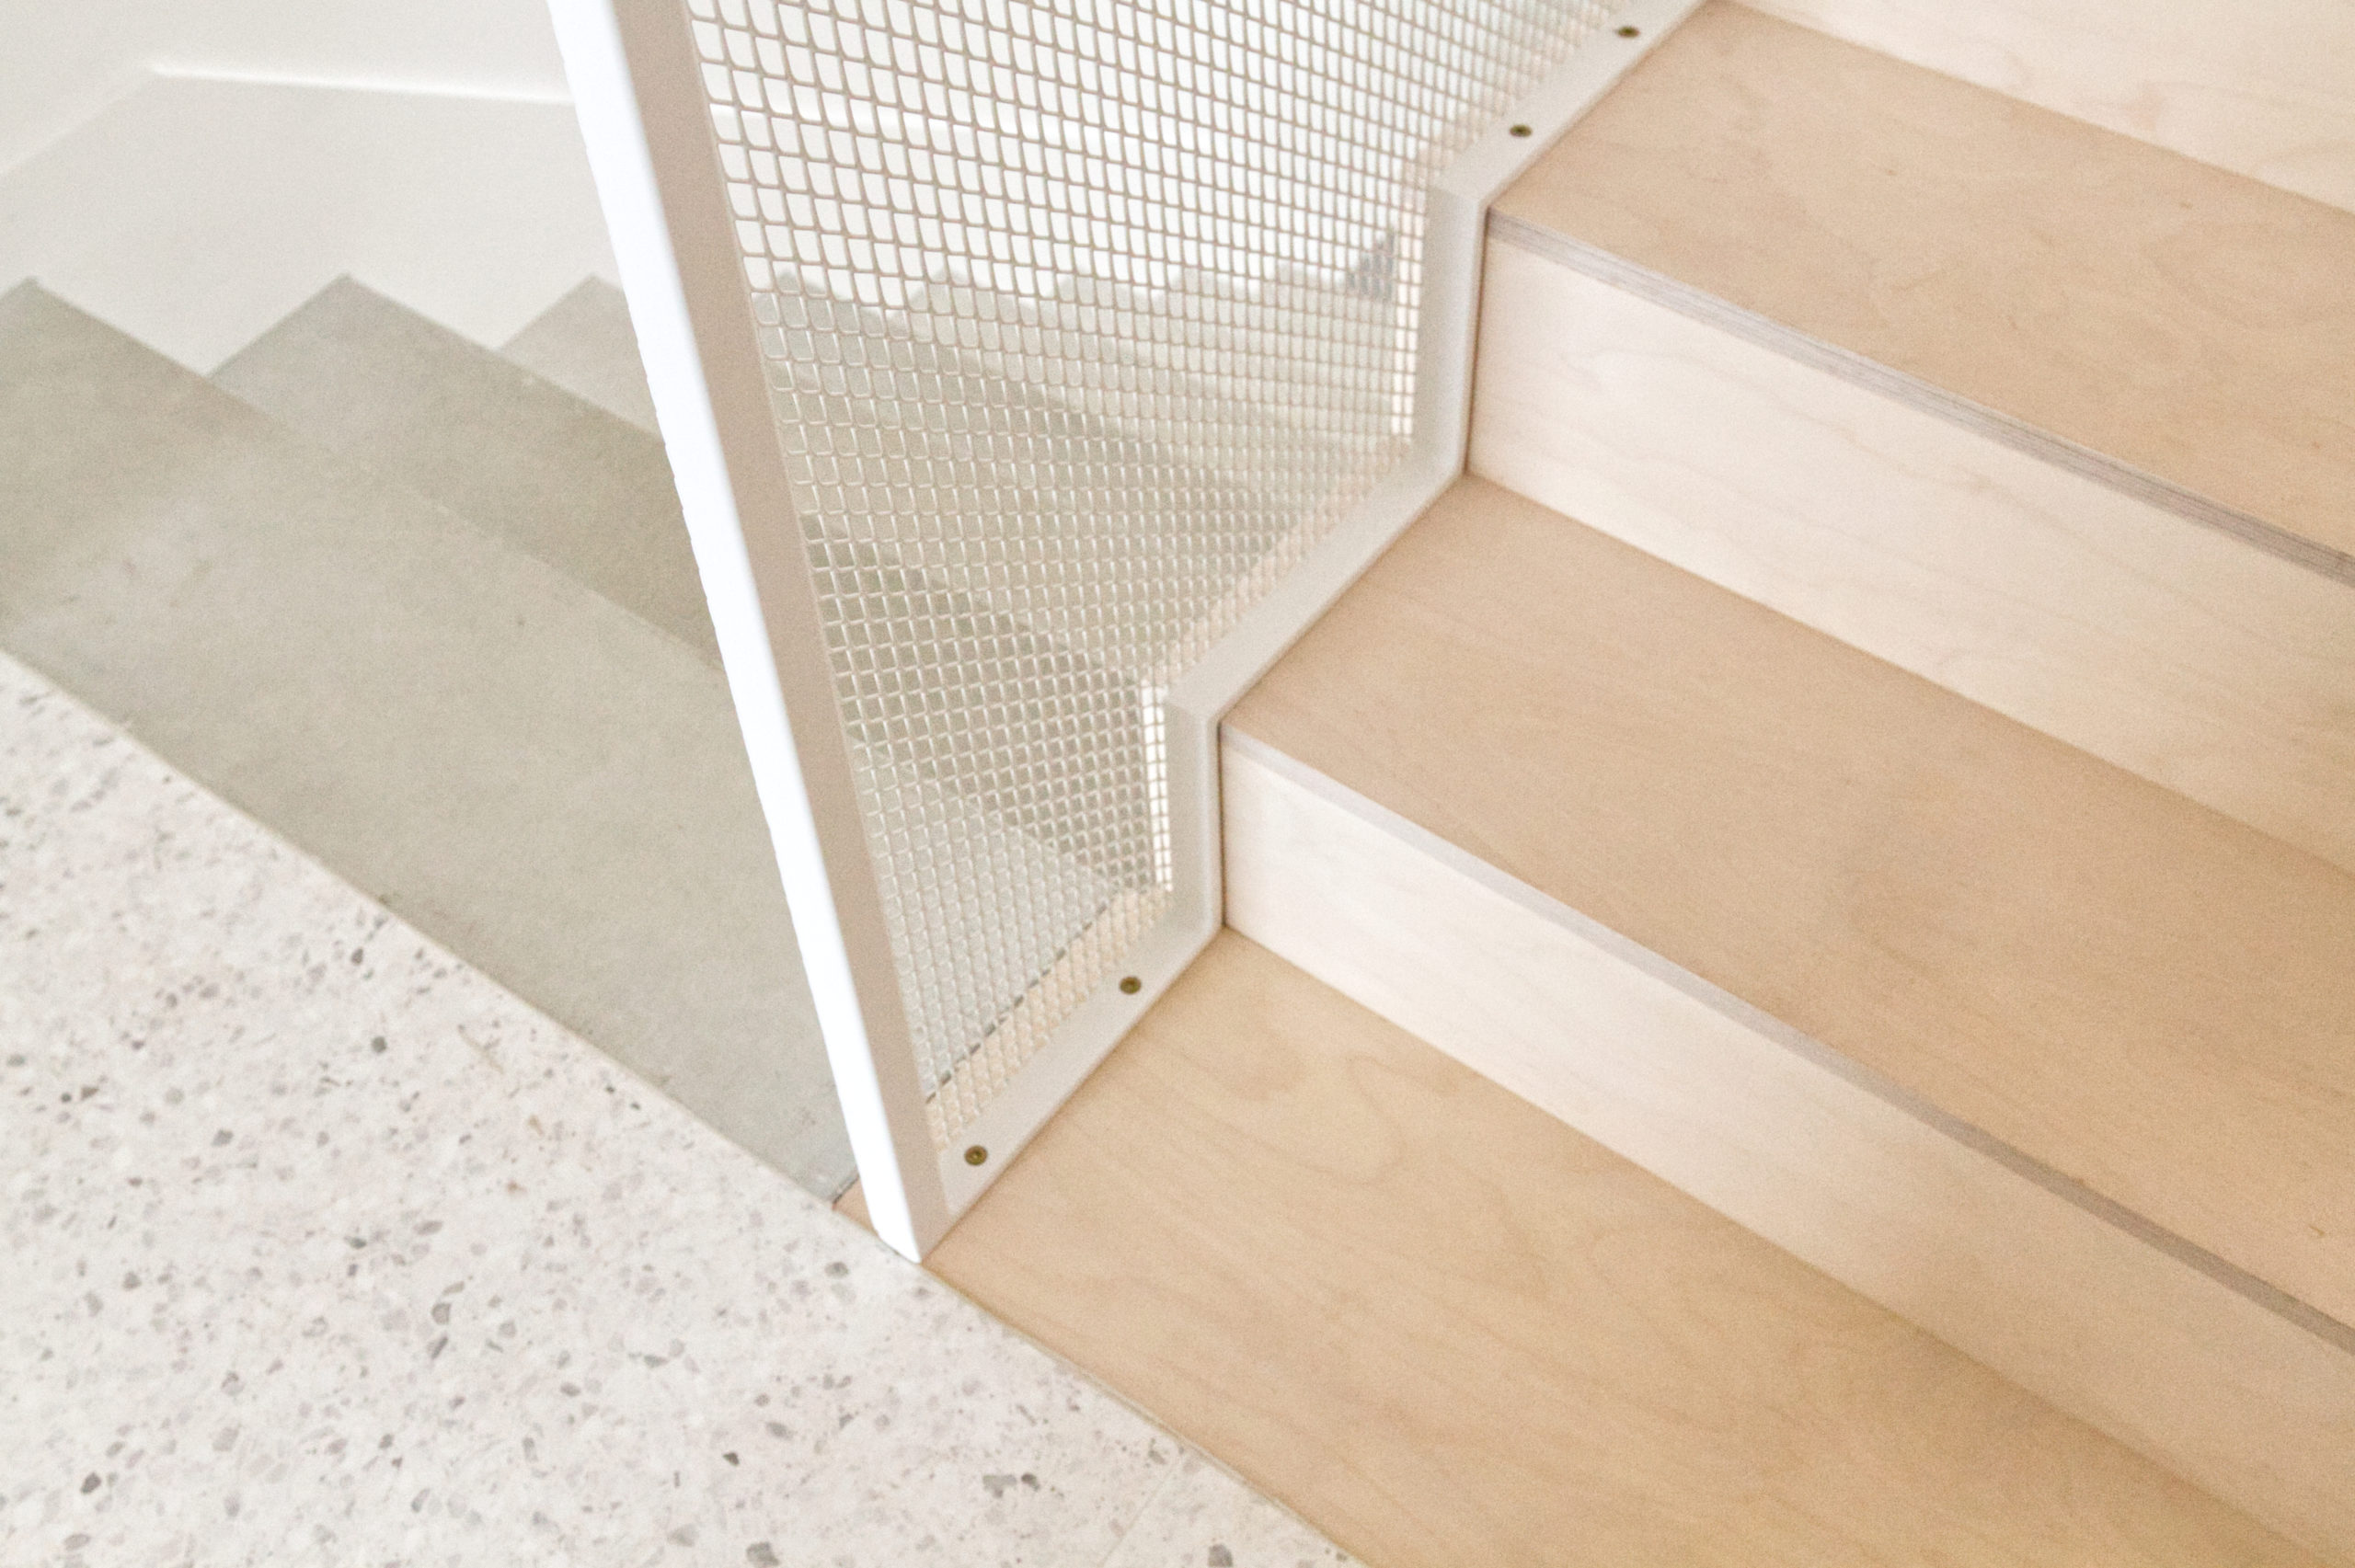 Détail escalier maison PP- terrazzo bois métal- architectes toulouse- saarchitectes